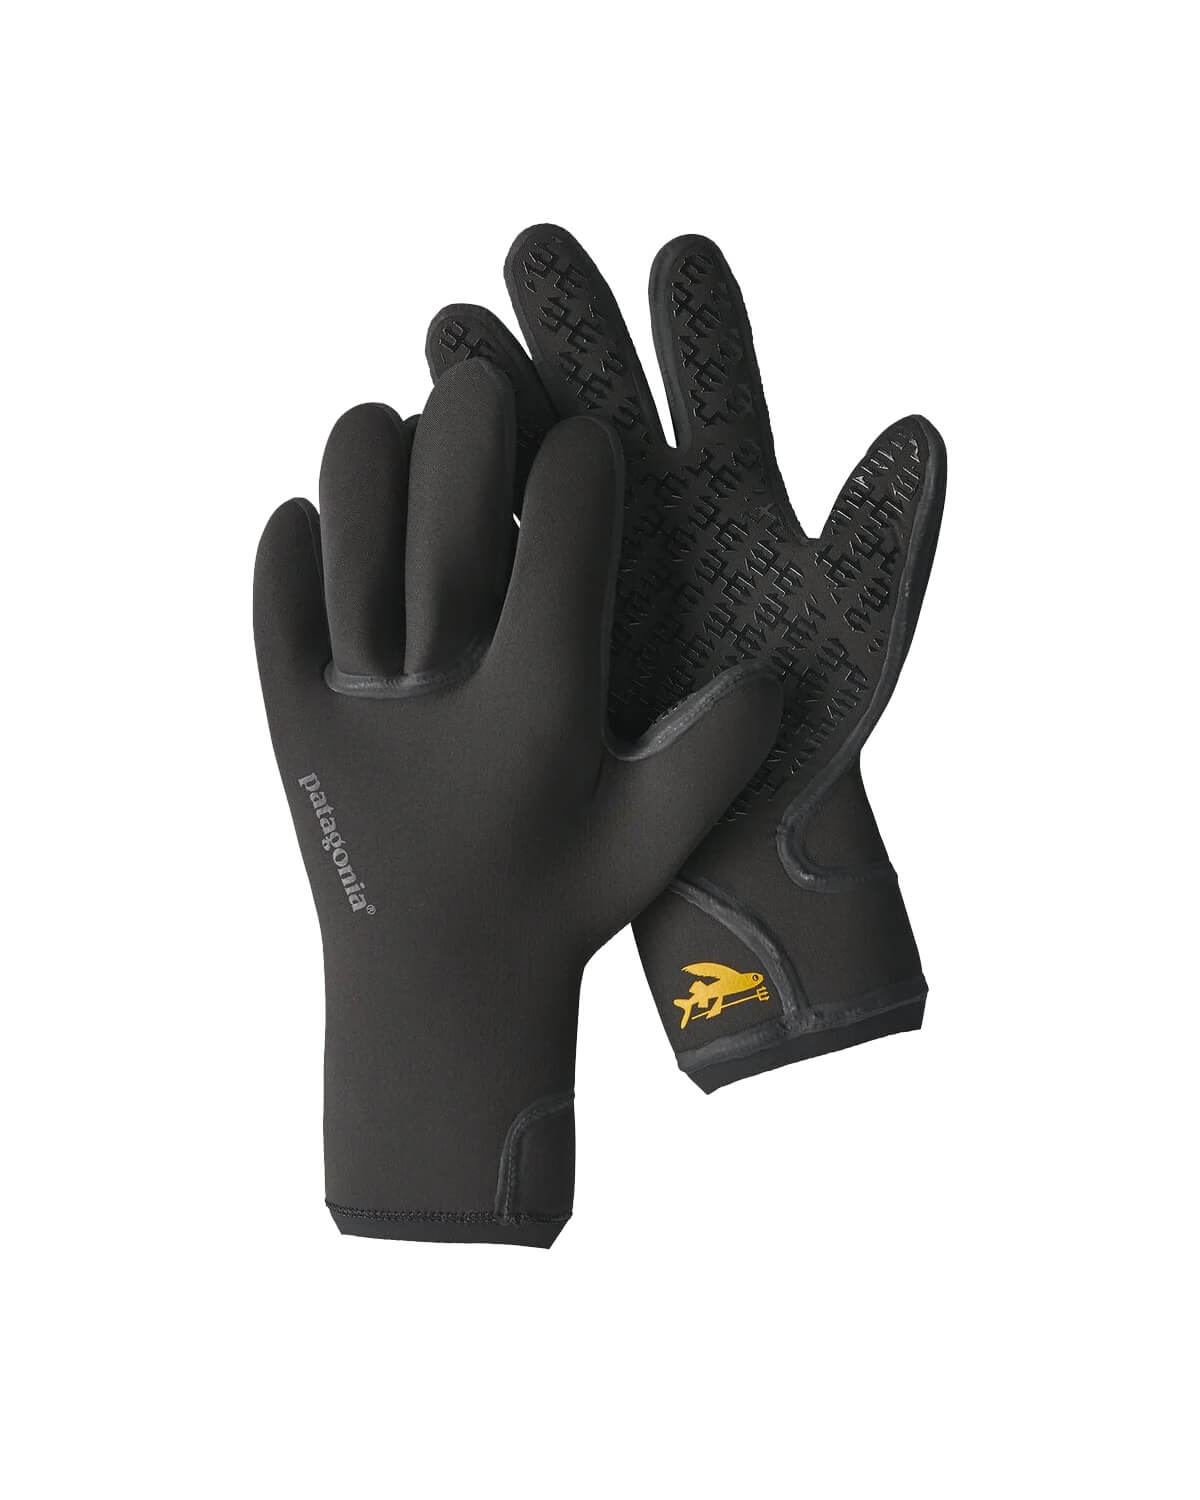 3mm Patagonia R3 YULEX Gloves